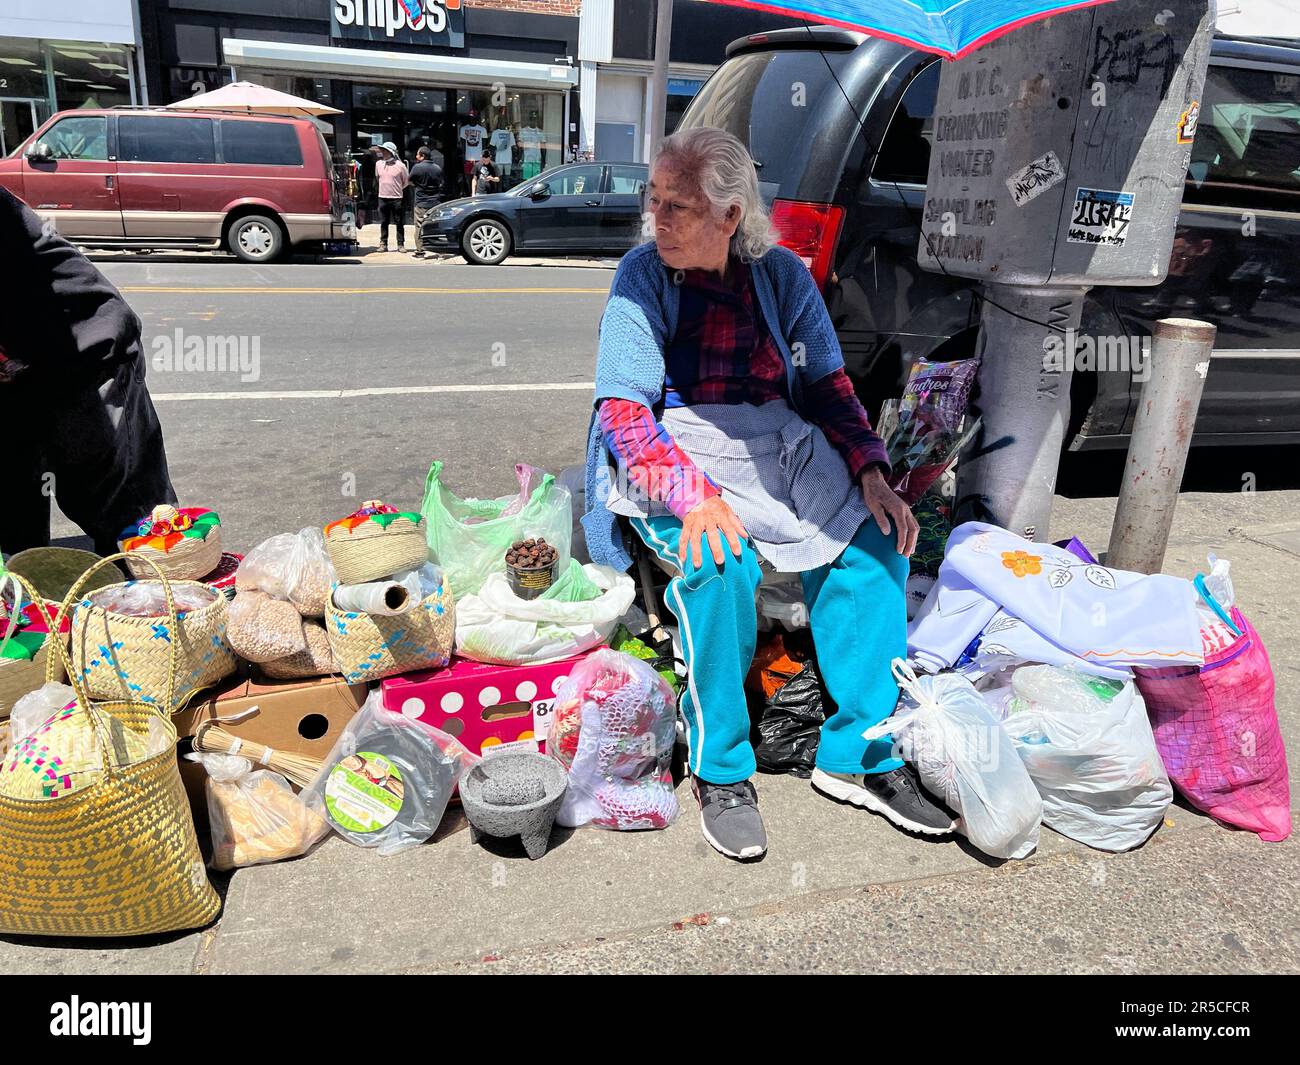 Woman vend diverses marchandises le long du trottoir dans le quartier de Sunset Park à Brooklyn, New York. Banque D'Images